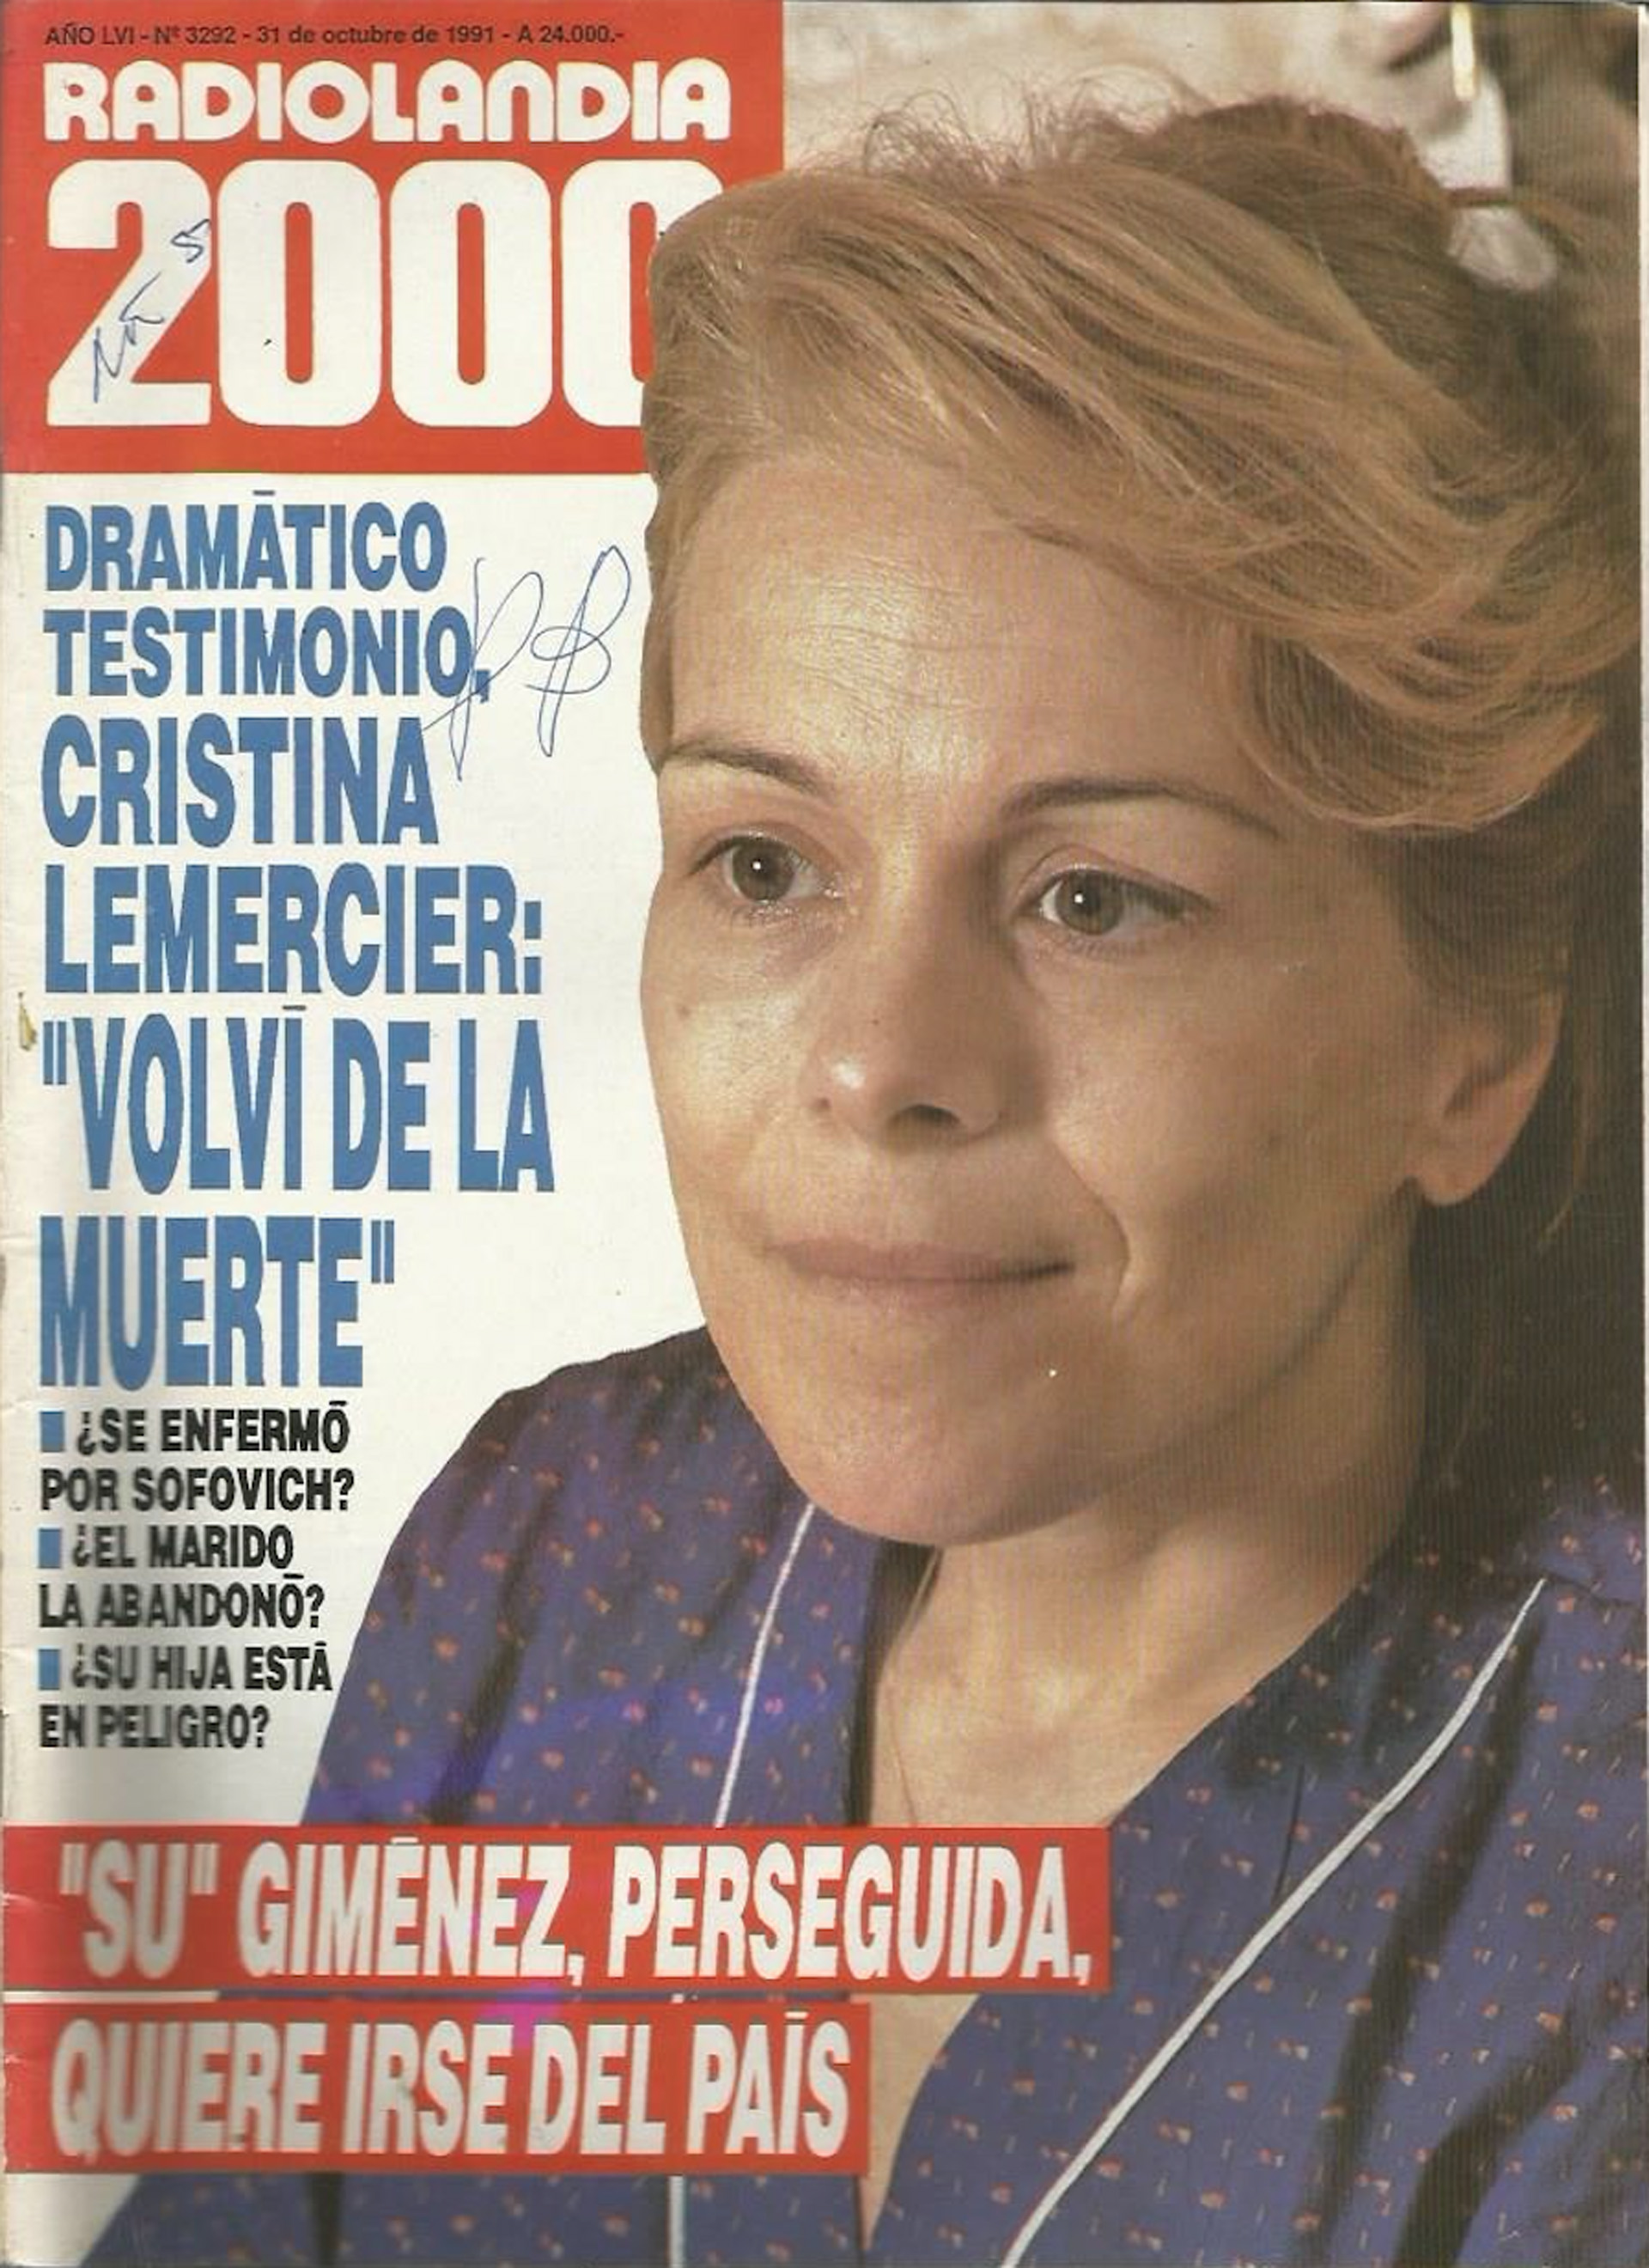 En 1992, Cristina Lemercier tuvo un problema serio de salud que la llevó a perder más de 10 kilos y a ser intervenida quirúrgicamente tres veces (Imagen: Radiolandia 2000 / Archivo TEA)